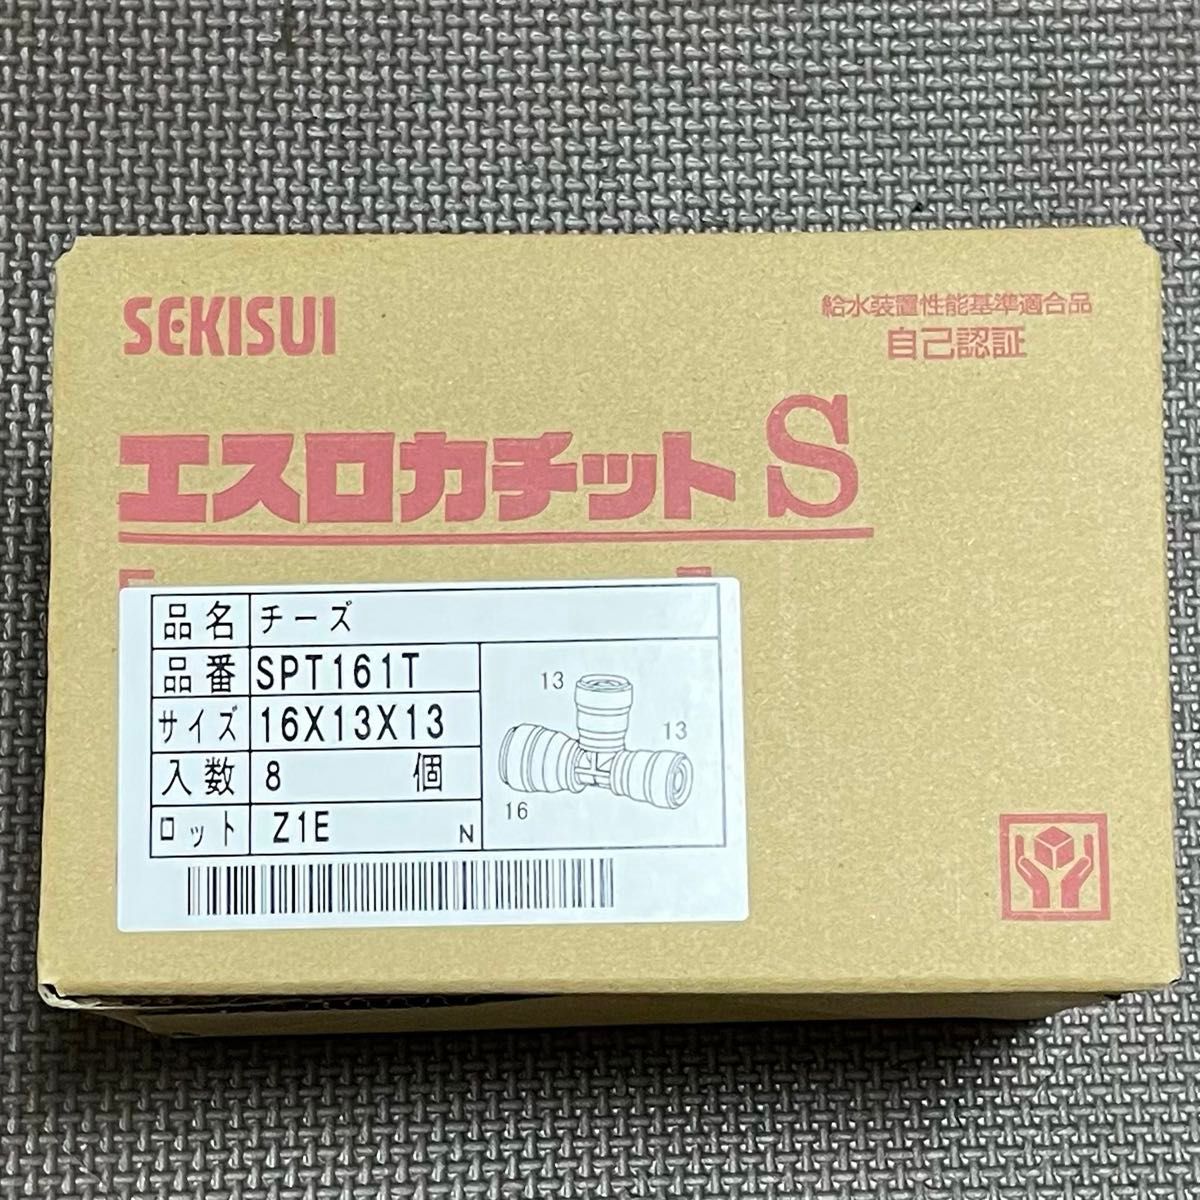 8個 セキスイ エスロカチットS SPT161T チーズ(16×13×13)